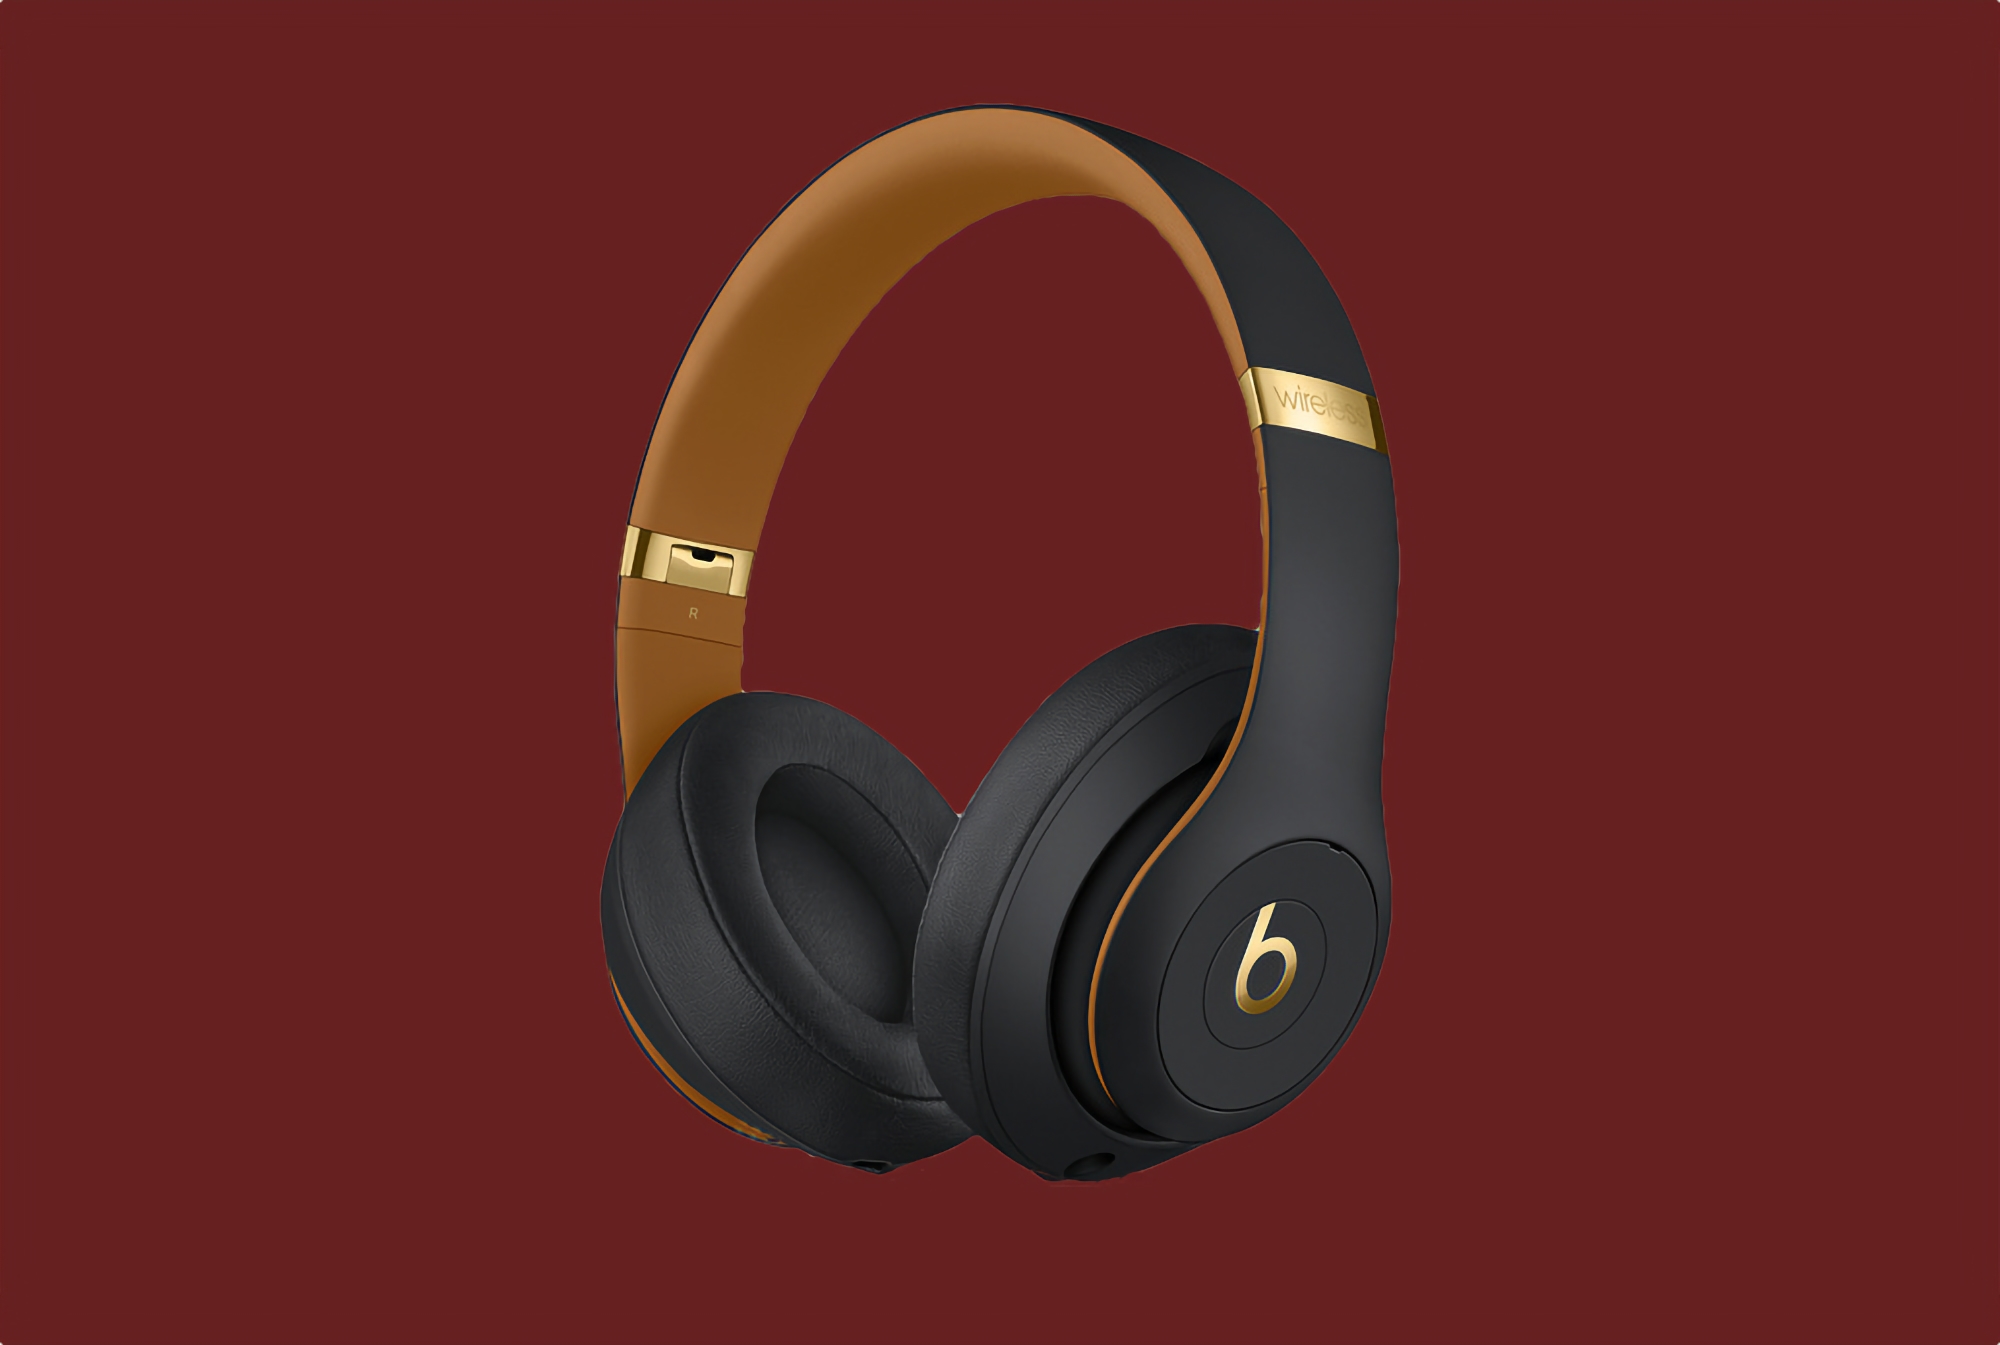 Beats Studio3 bei Amazon: Kabellose Ohrhörer mit ANC, Apple W1 Chip und bis zu 40 Stunden Akkulaufzeit für 199€ (150€ Rabatt)